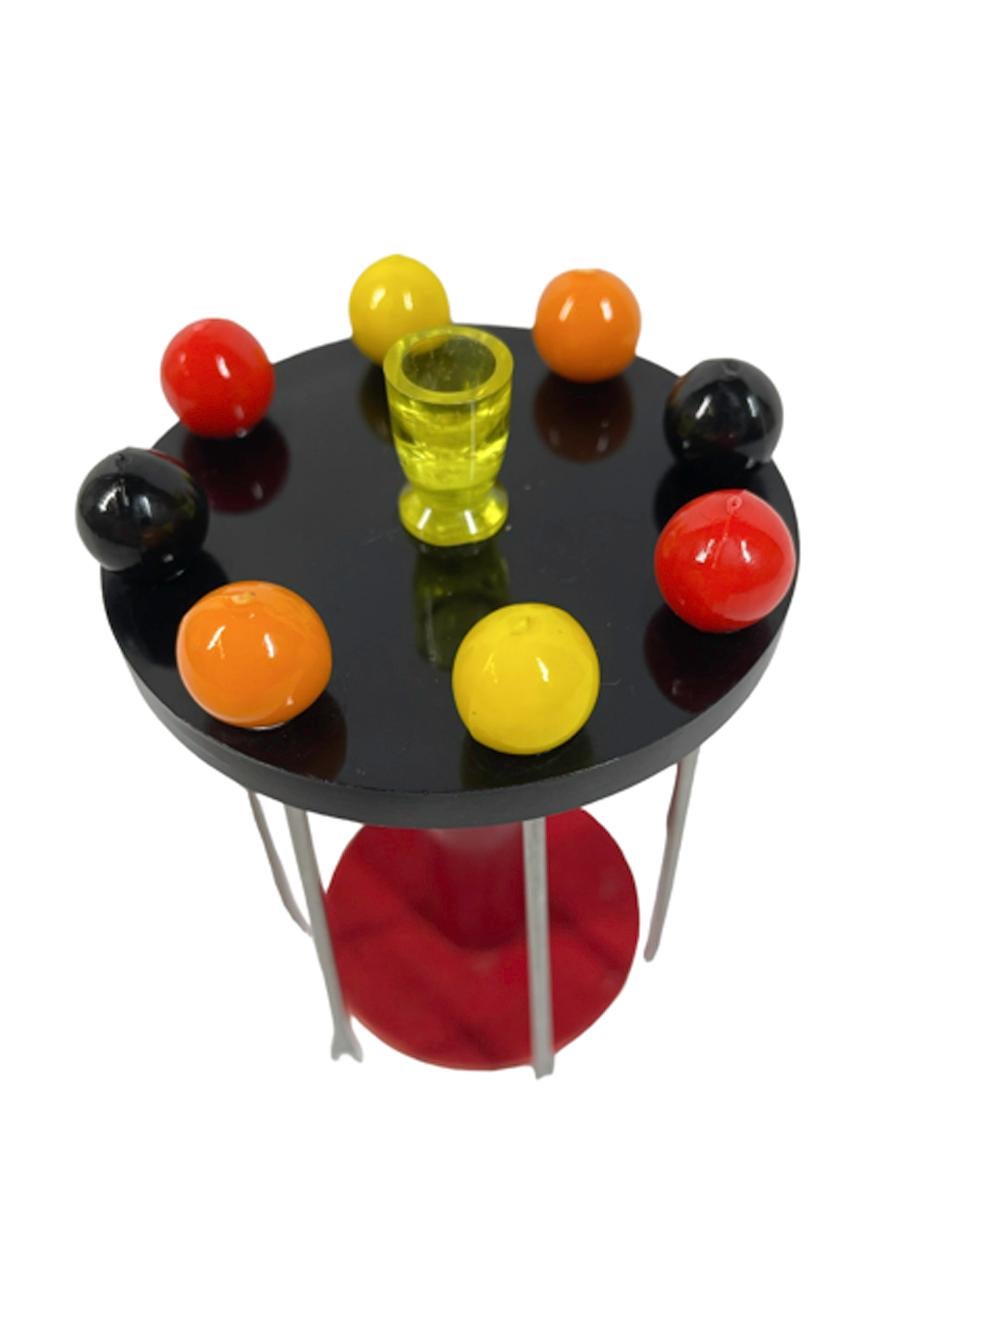 Ensemble de huit pics à cocktail et support, 2 pics de 4 couleurs chacun en acier avec embouts sphériques sont suspendus au sommet d'un support en forme de table. La table a un plateau en bakélite noire soutenu par une colonne en bakélite rouge